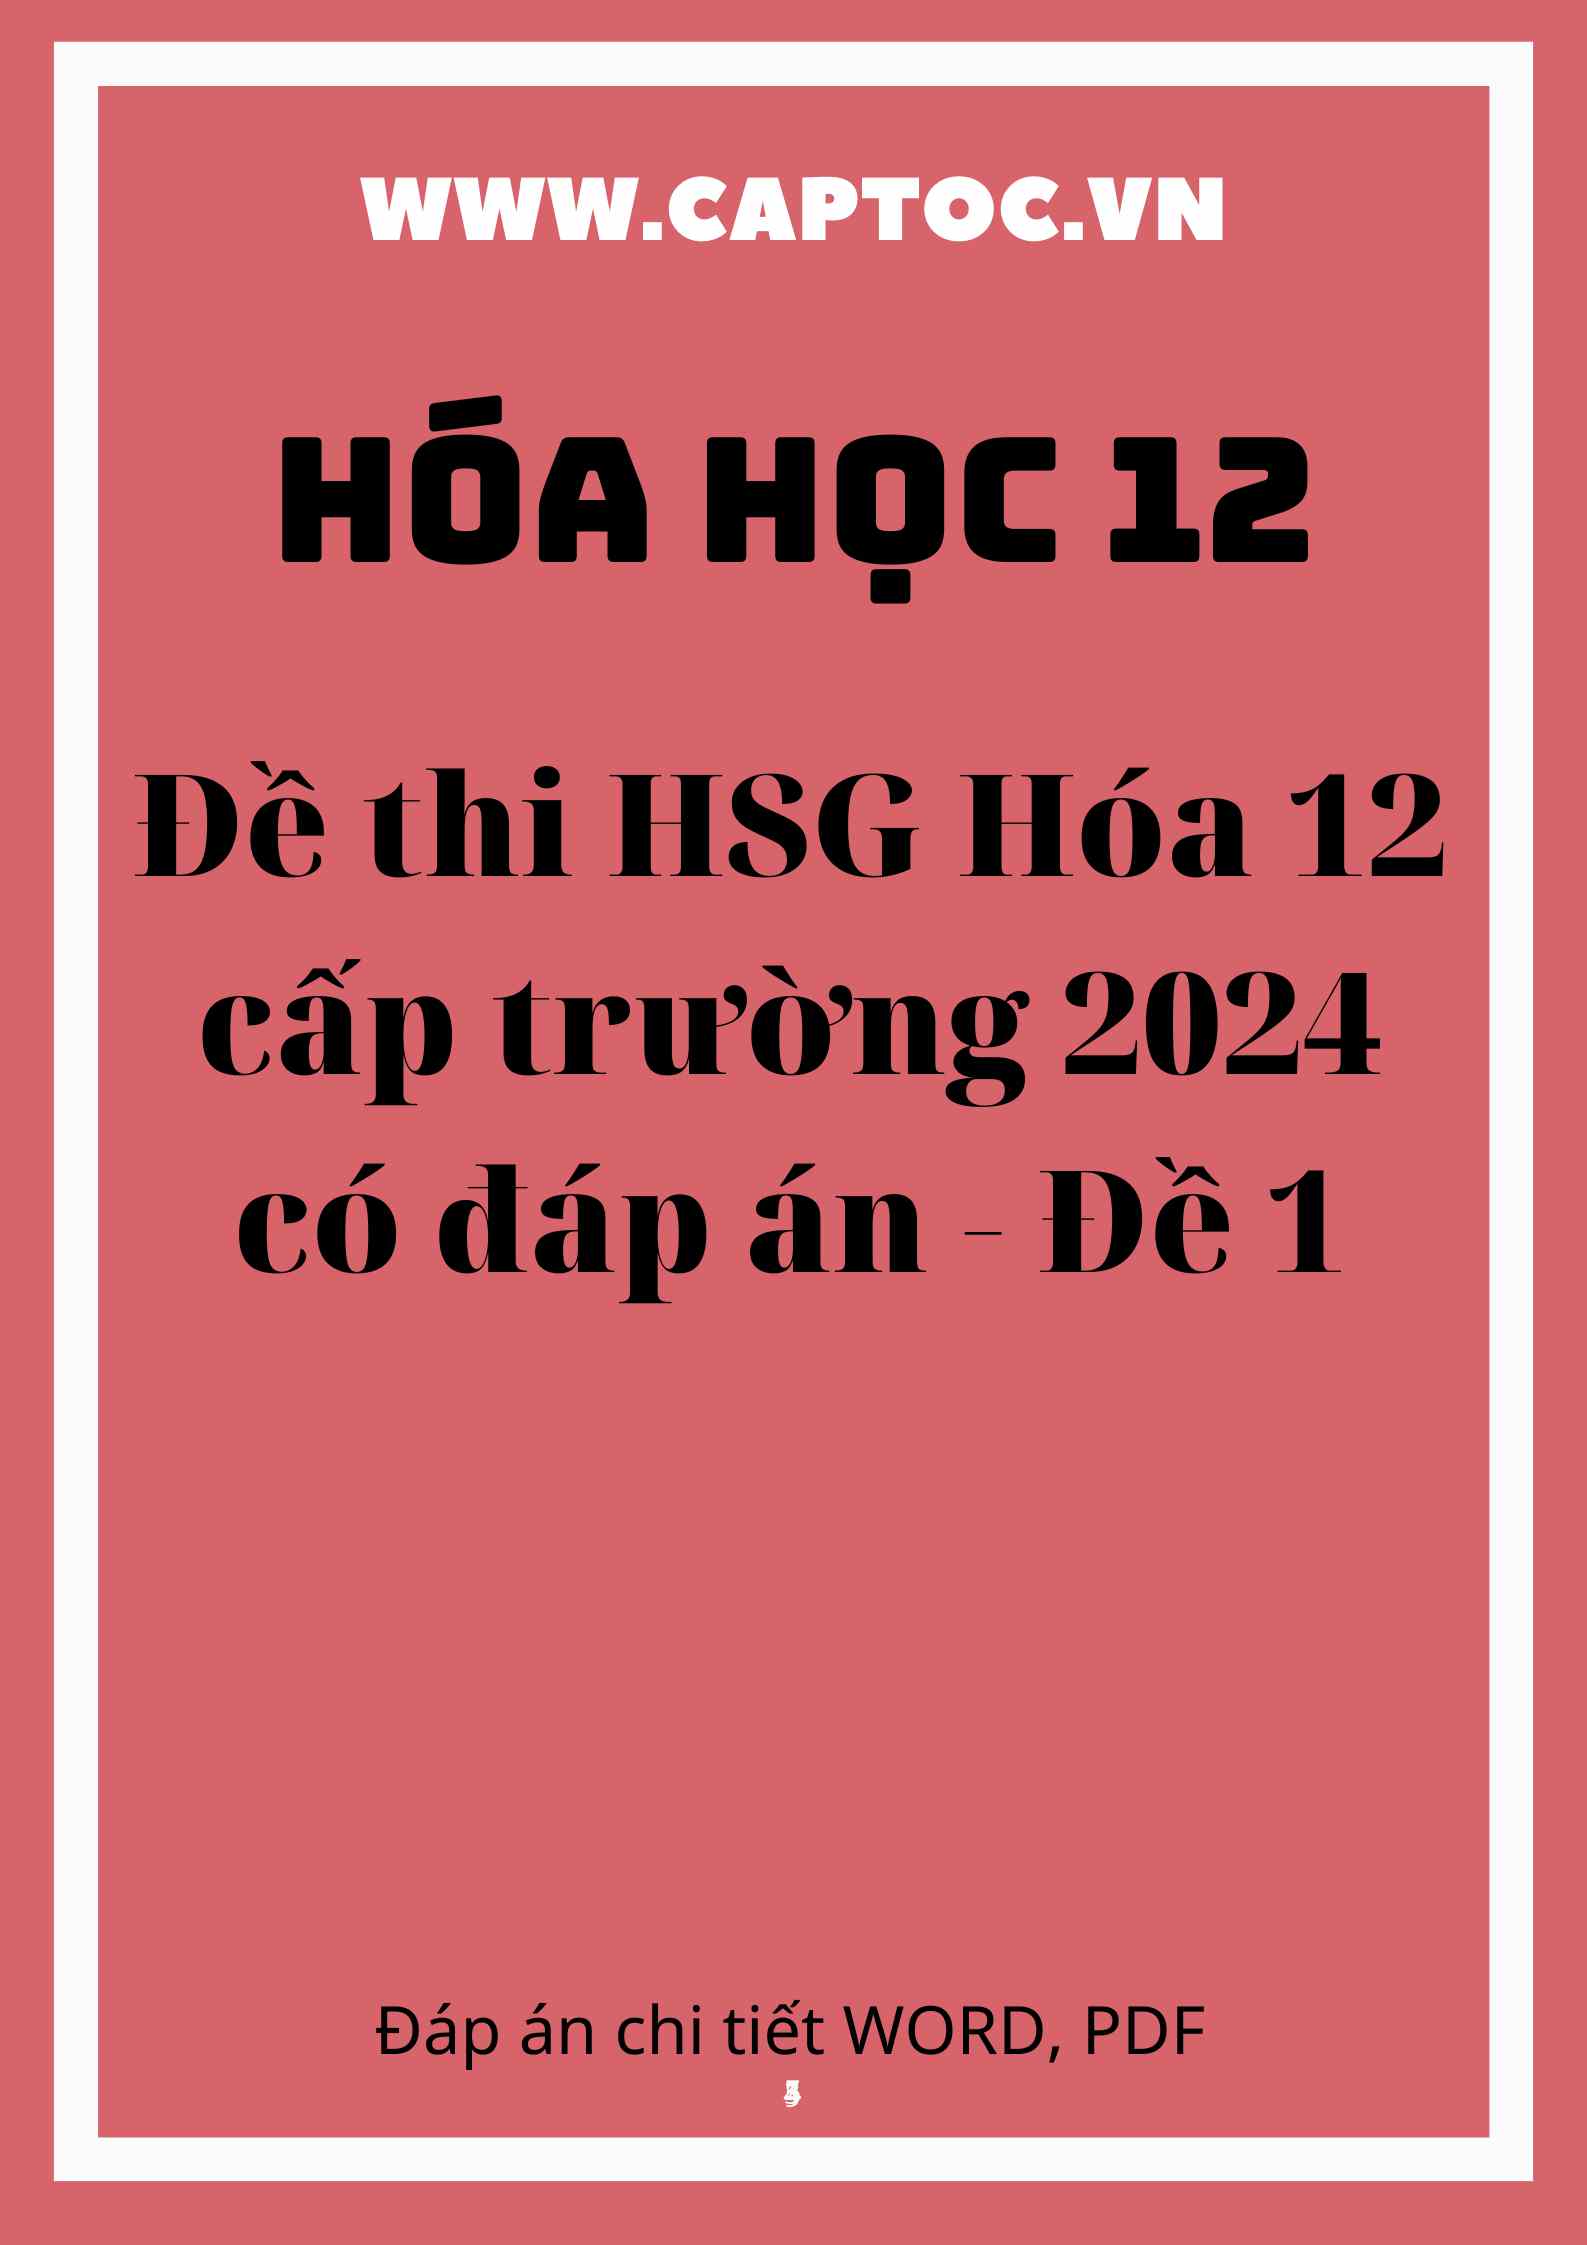 Đề thi HSG Hóa 12 cấp trường 2024 có đáp án - Đề 1